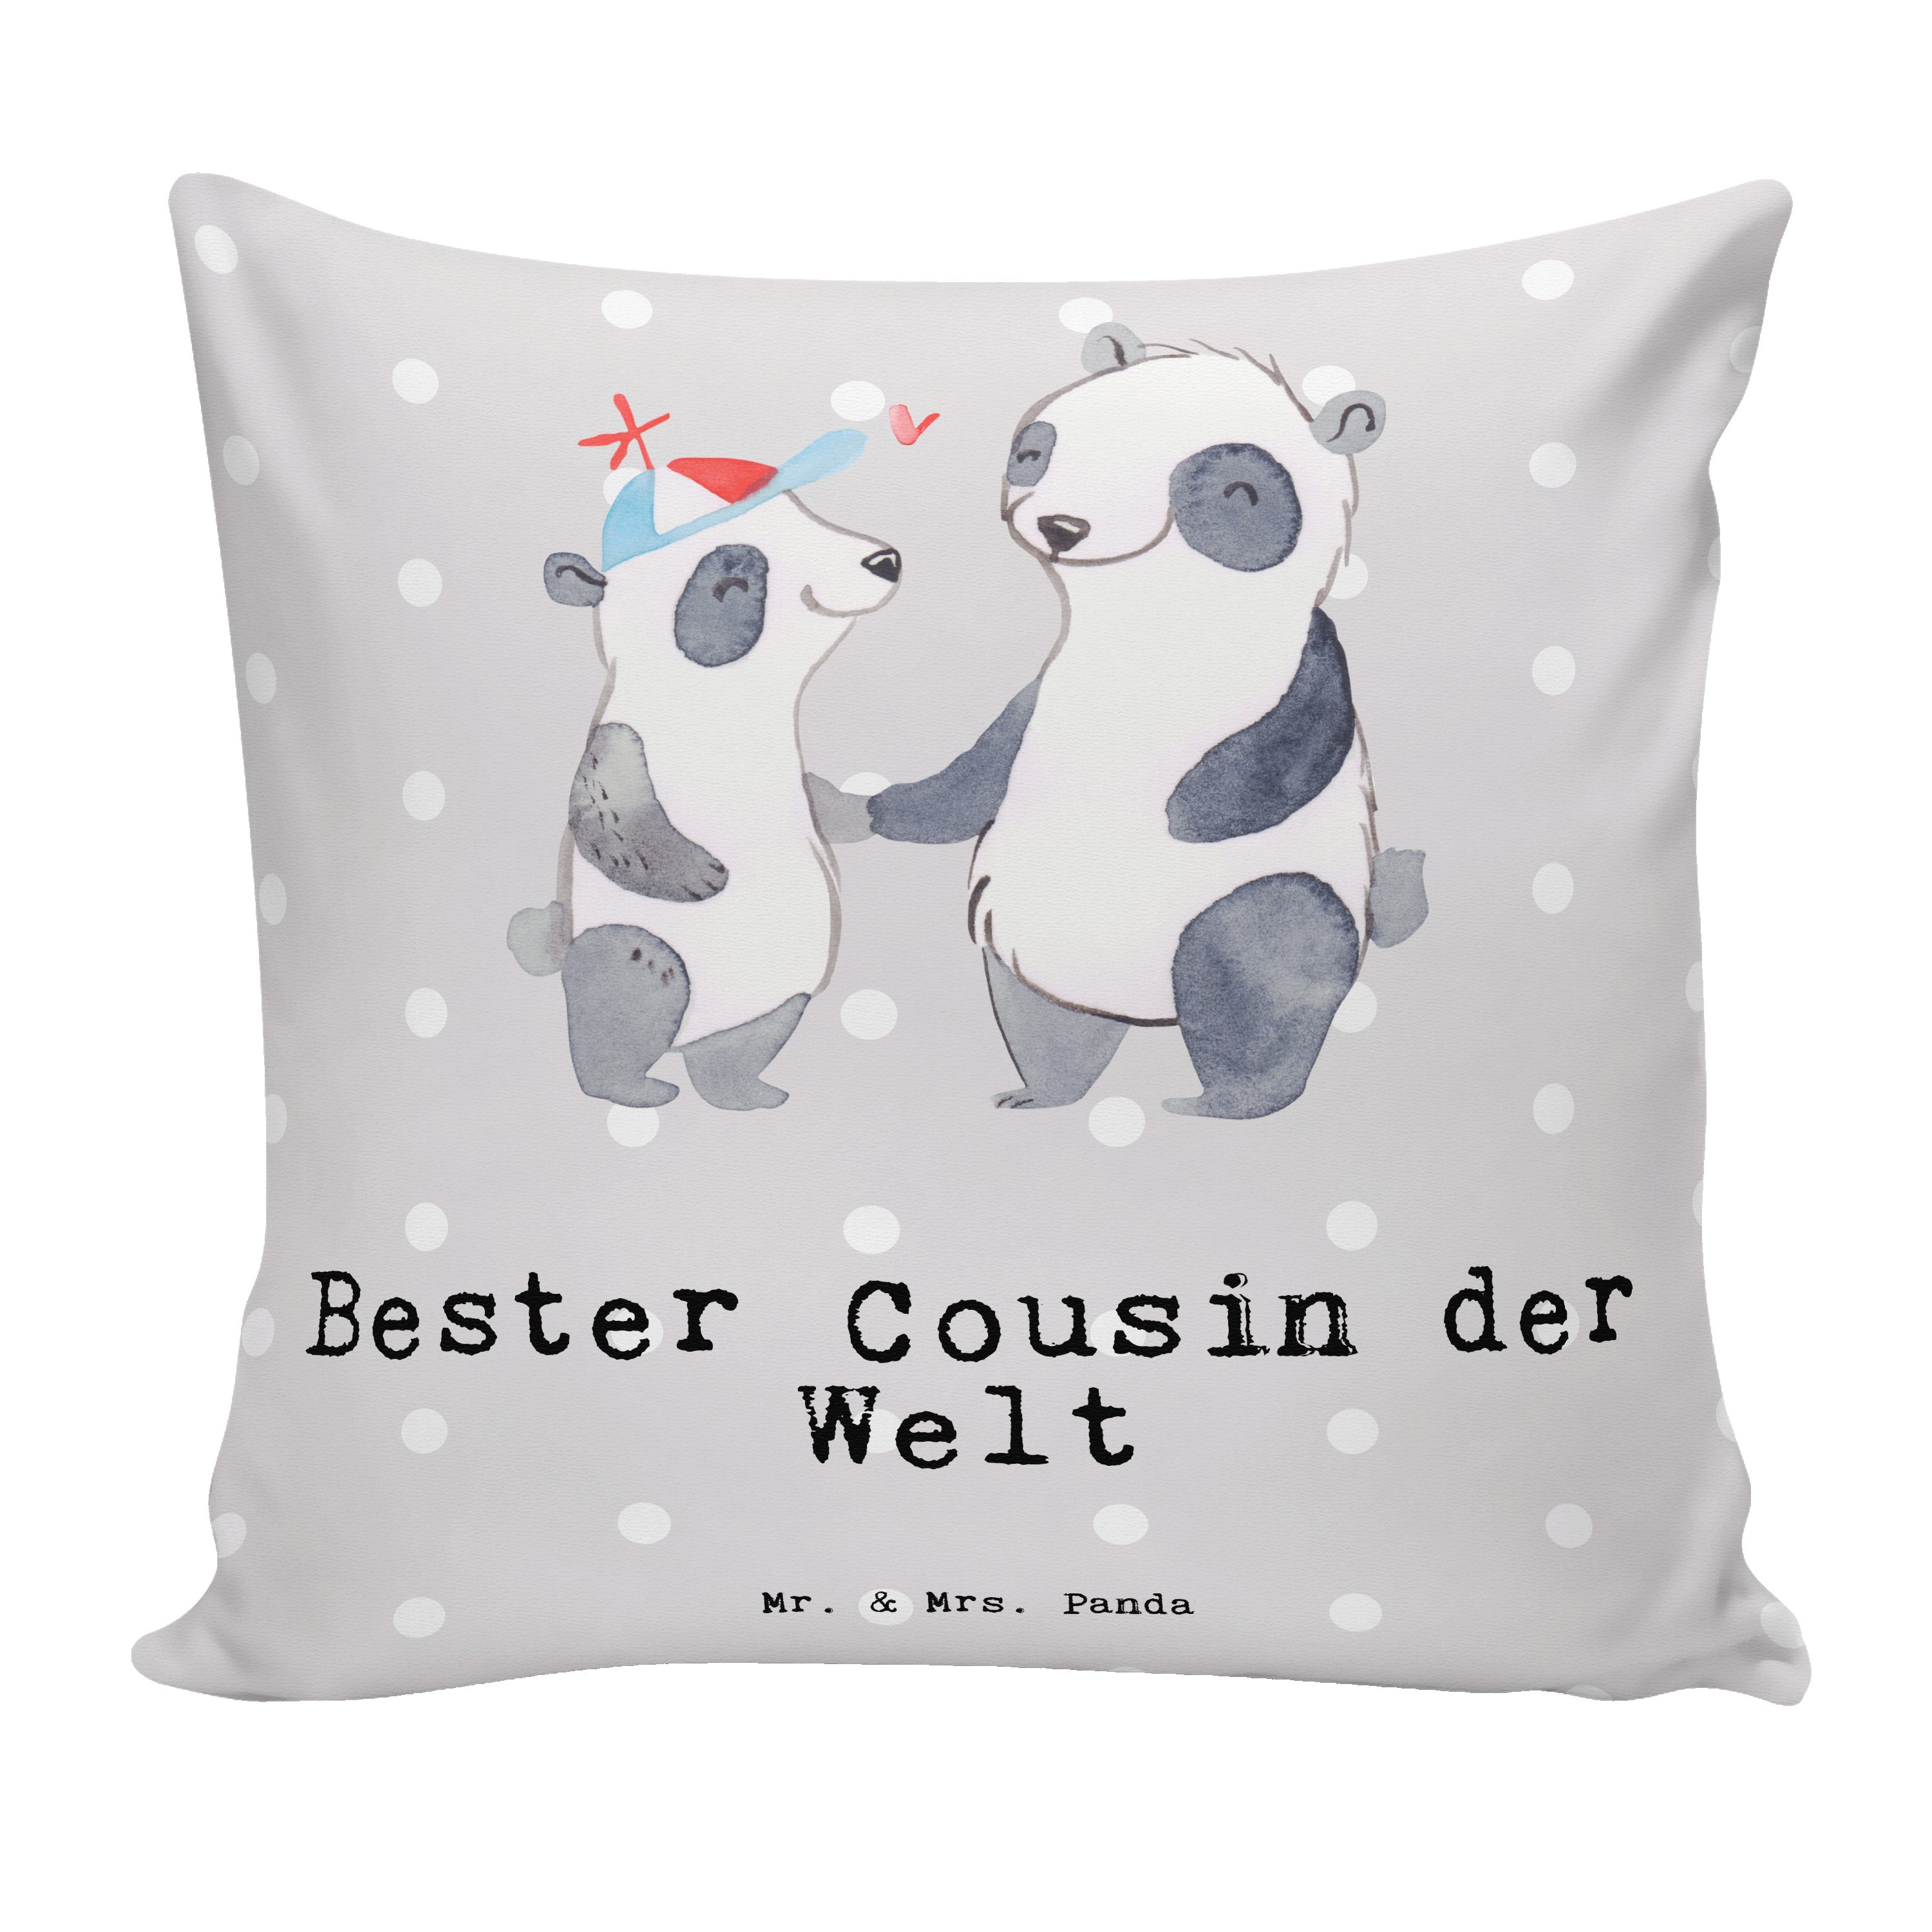 Mr. & Mrs. Panda Dekokissen Panda Bester Cousin der Welt - Grau Pastell - Geschenk, Dekokissen, K